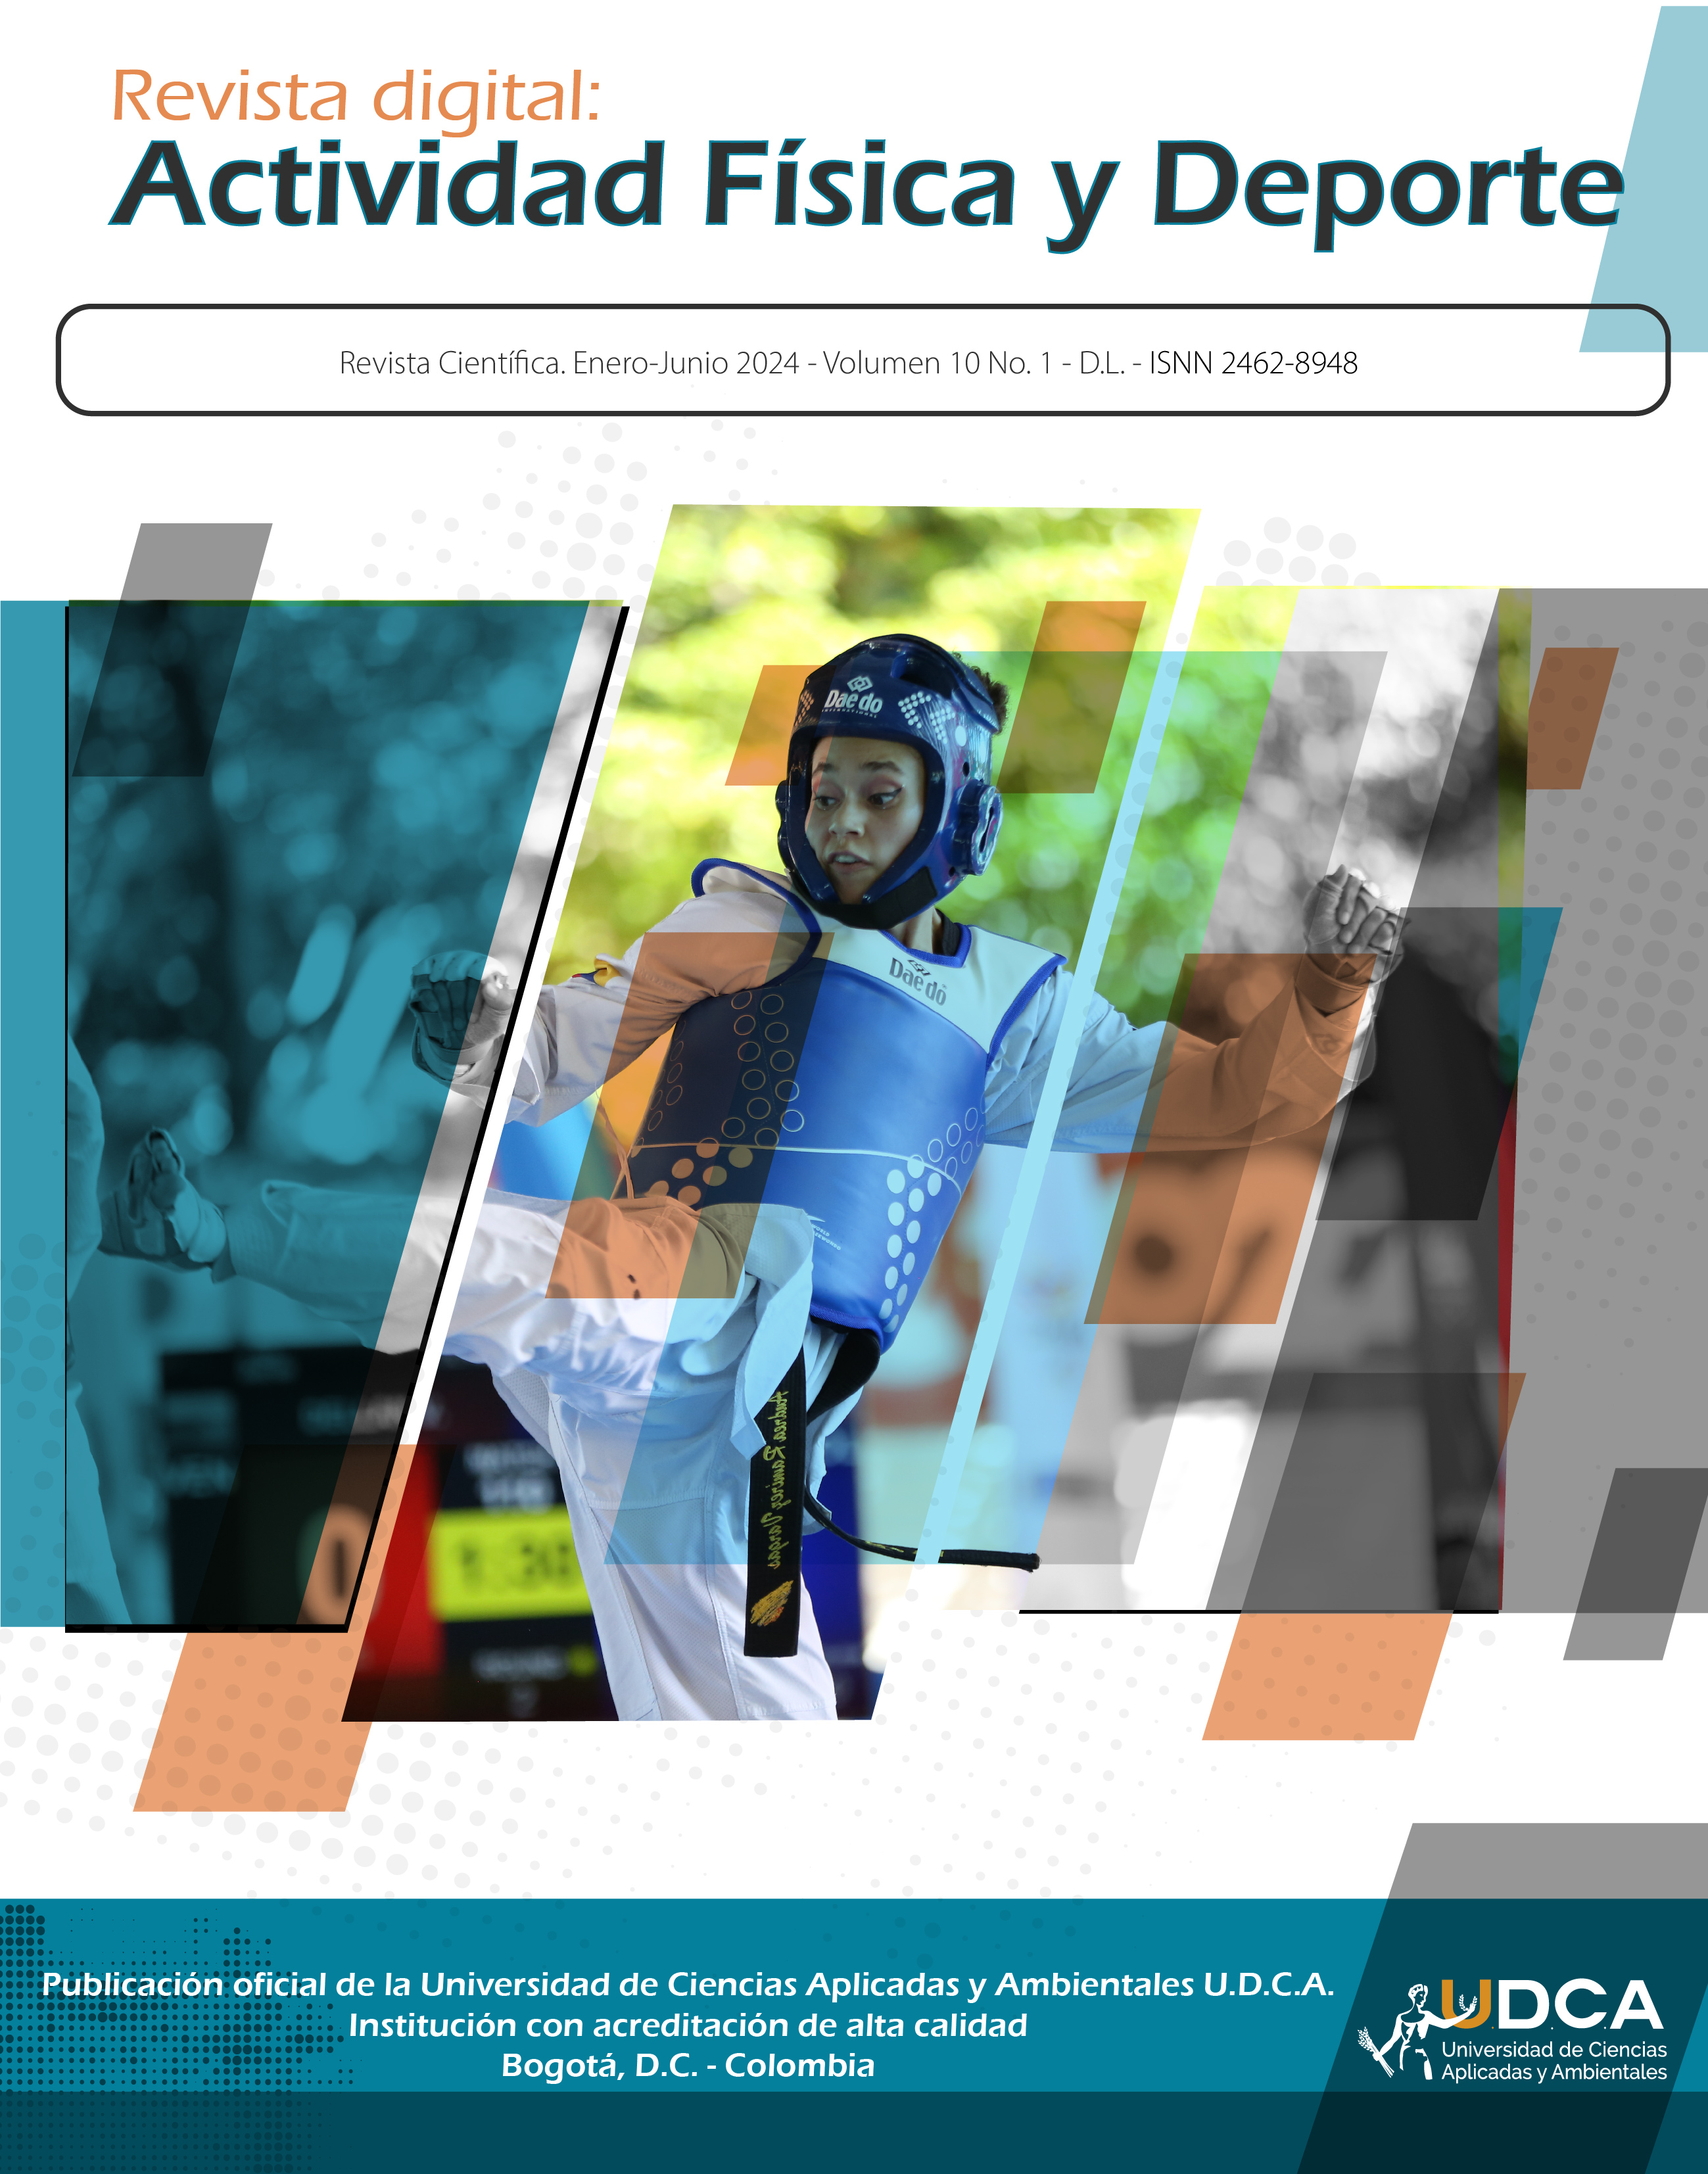 Revista digital: Actividad Física y Deporte